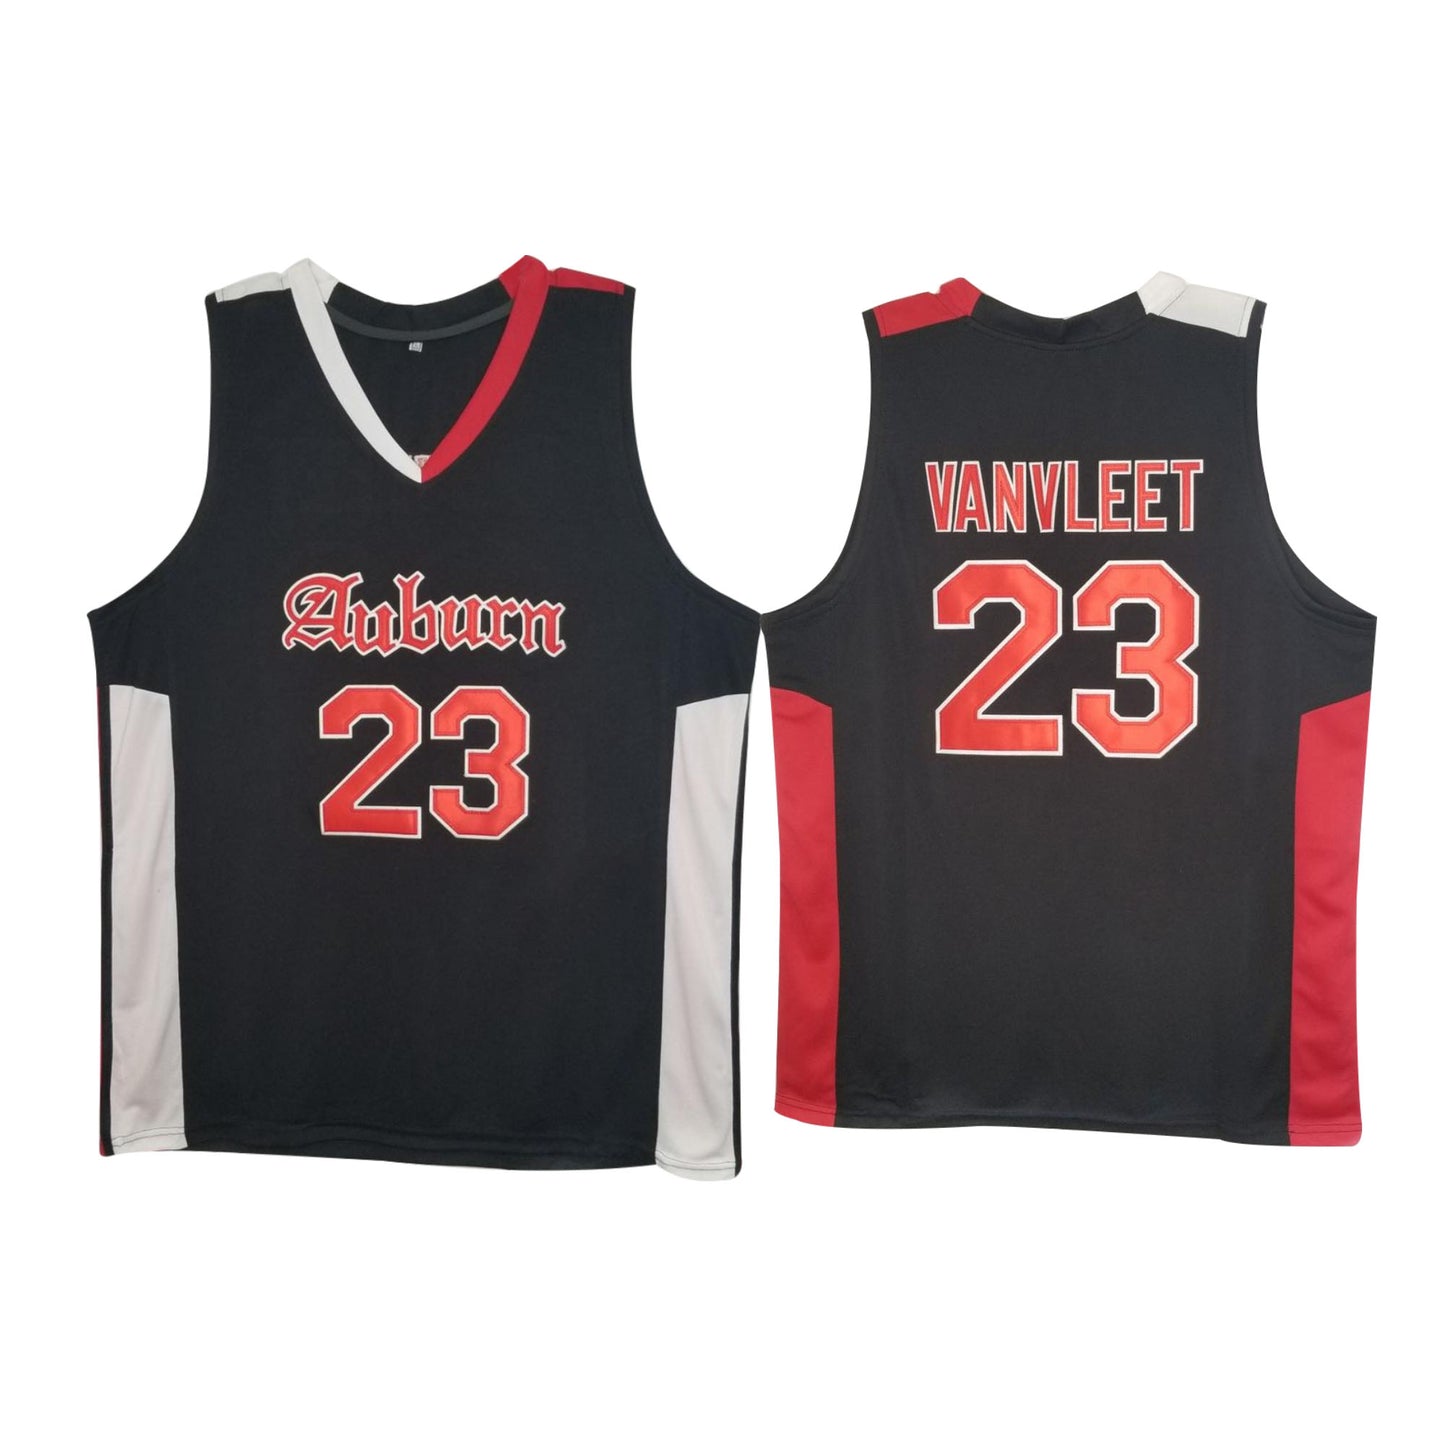 Fred VanVleet High School 23 Basketball Jersey